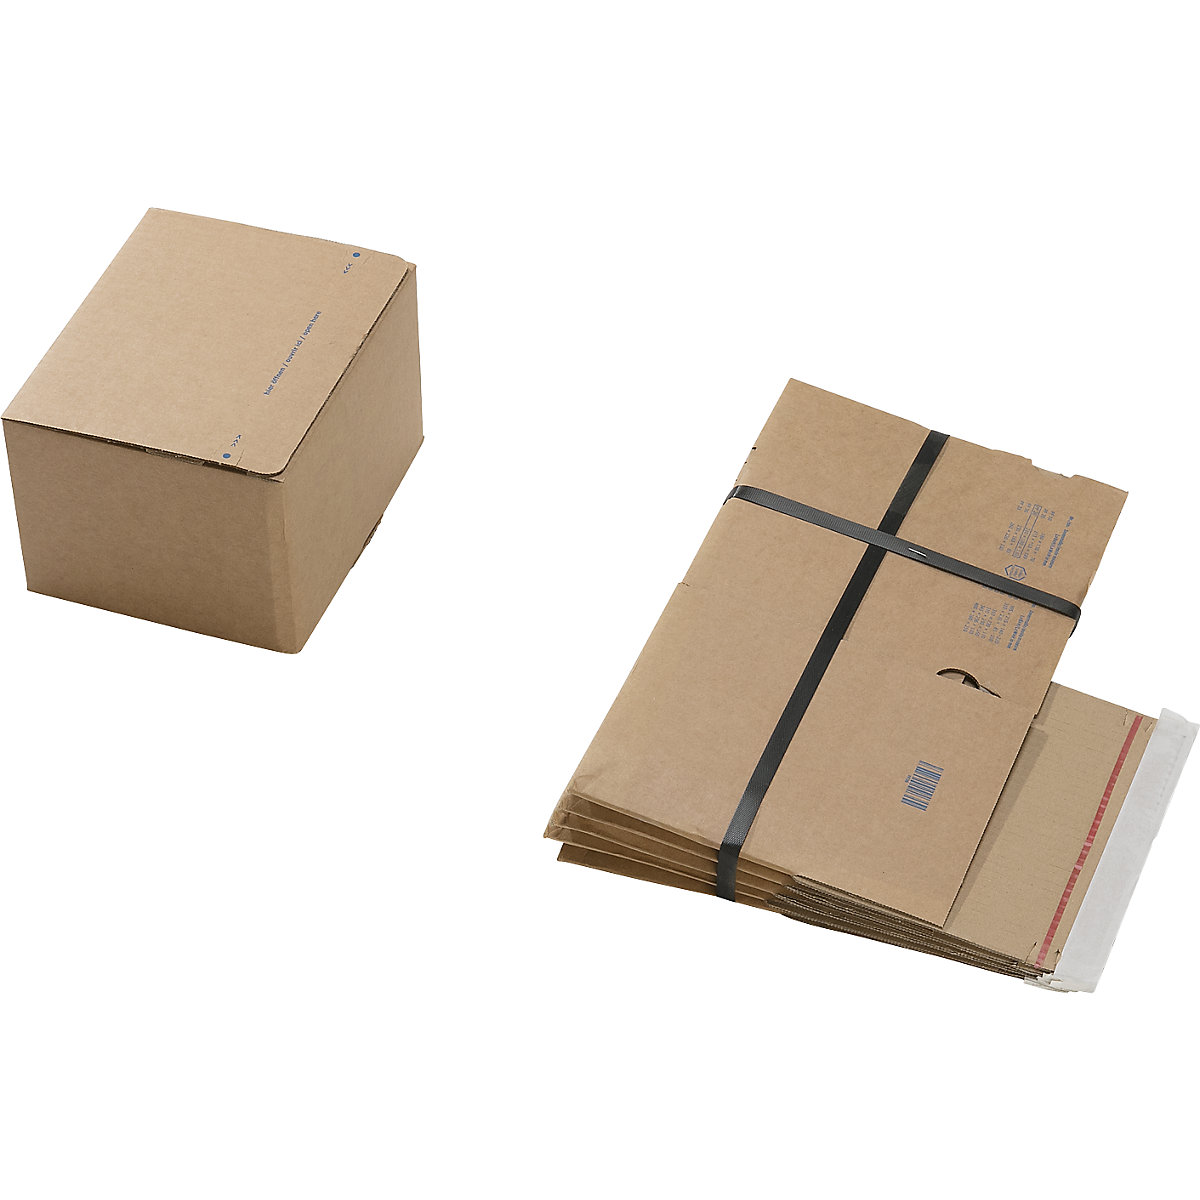 Caixa de cartão de envio, com fundo automático e fecho autocolante, dimensões interiores CxLxA 210 x 180 x 130 mm, embalagem de 100 unidades-1